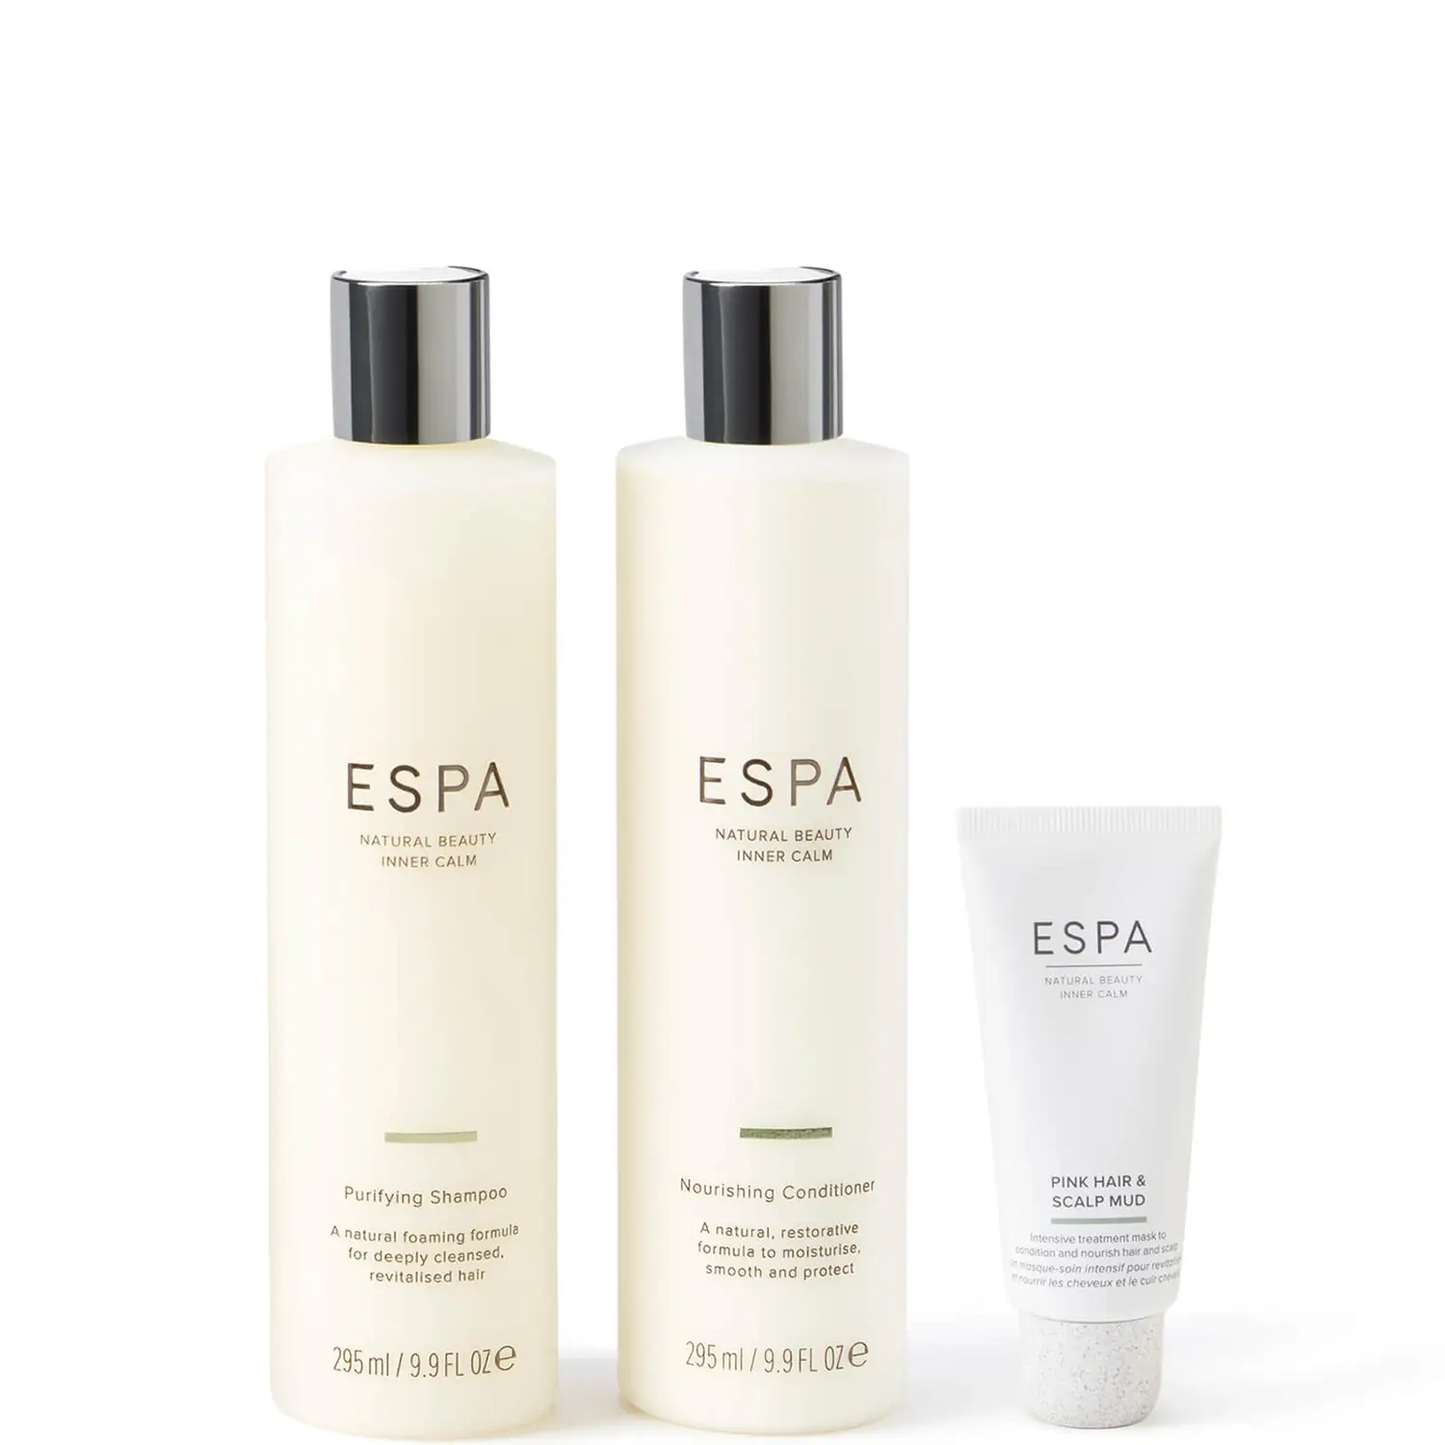 ESPA rinkinys plaukų priežiūrai (vertė 72 €)